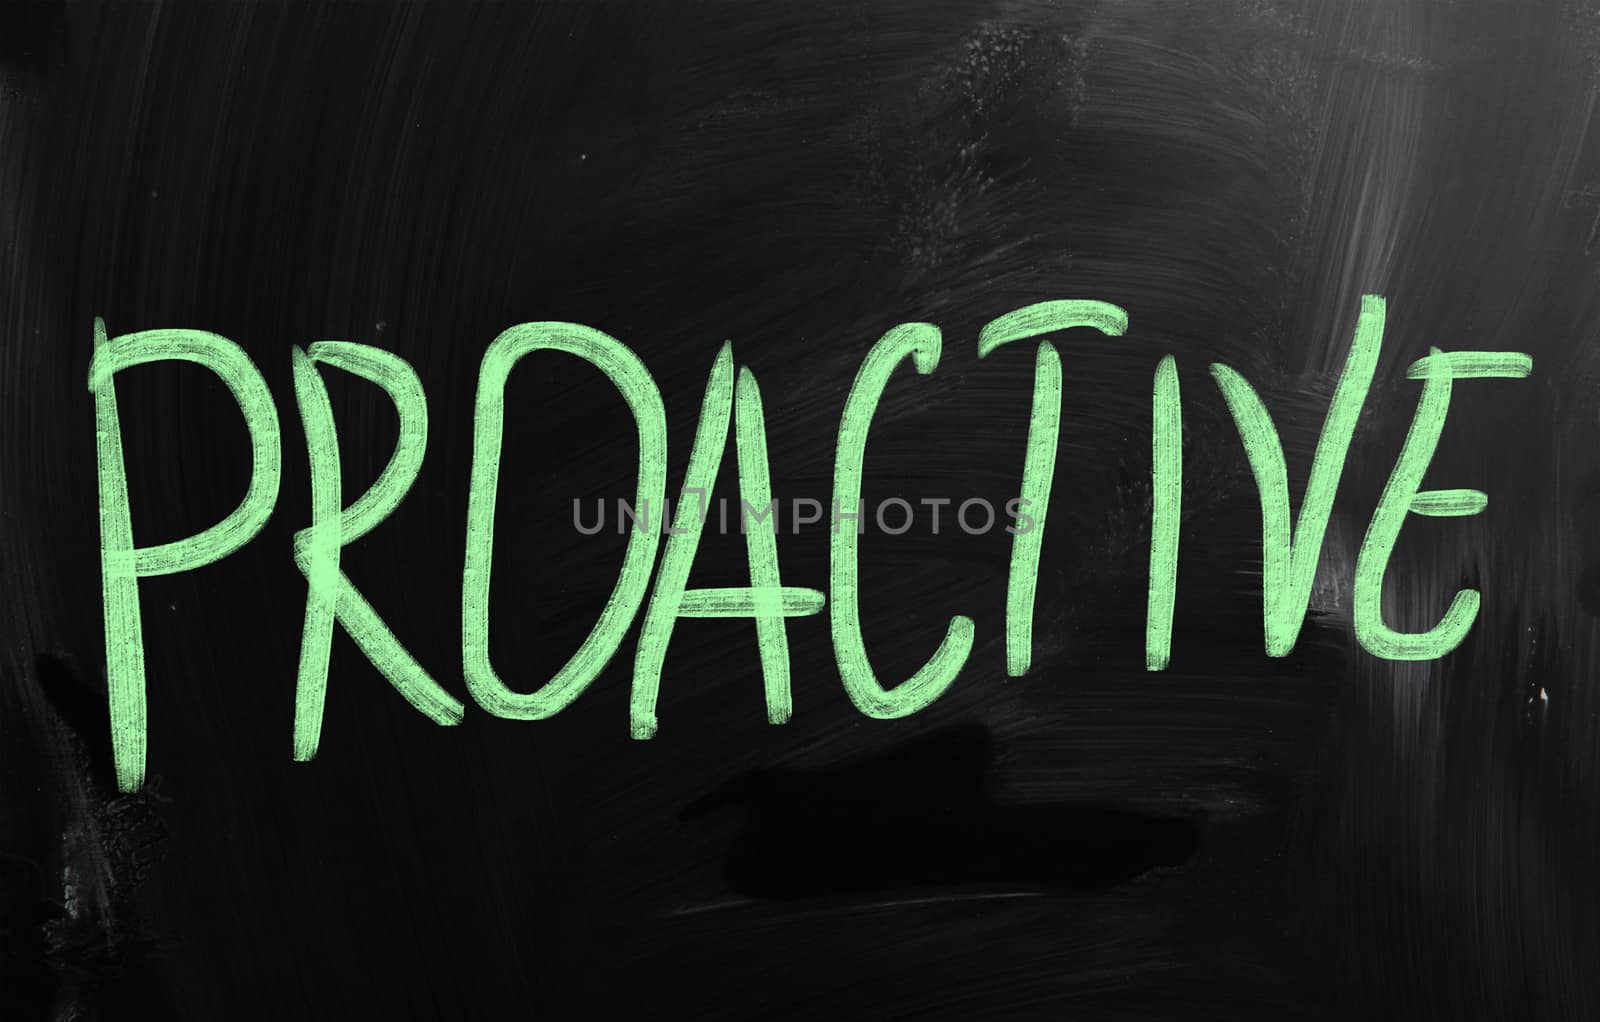 Proactive